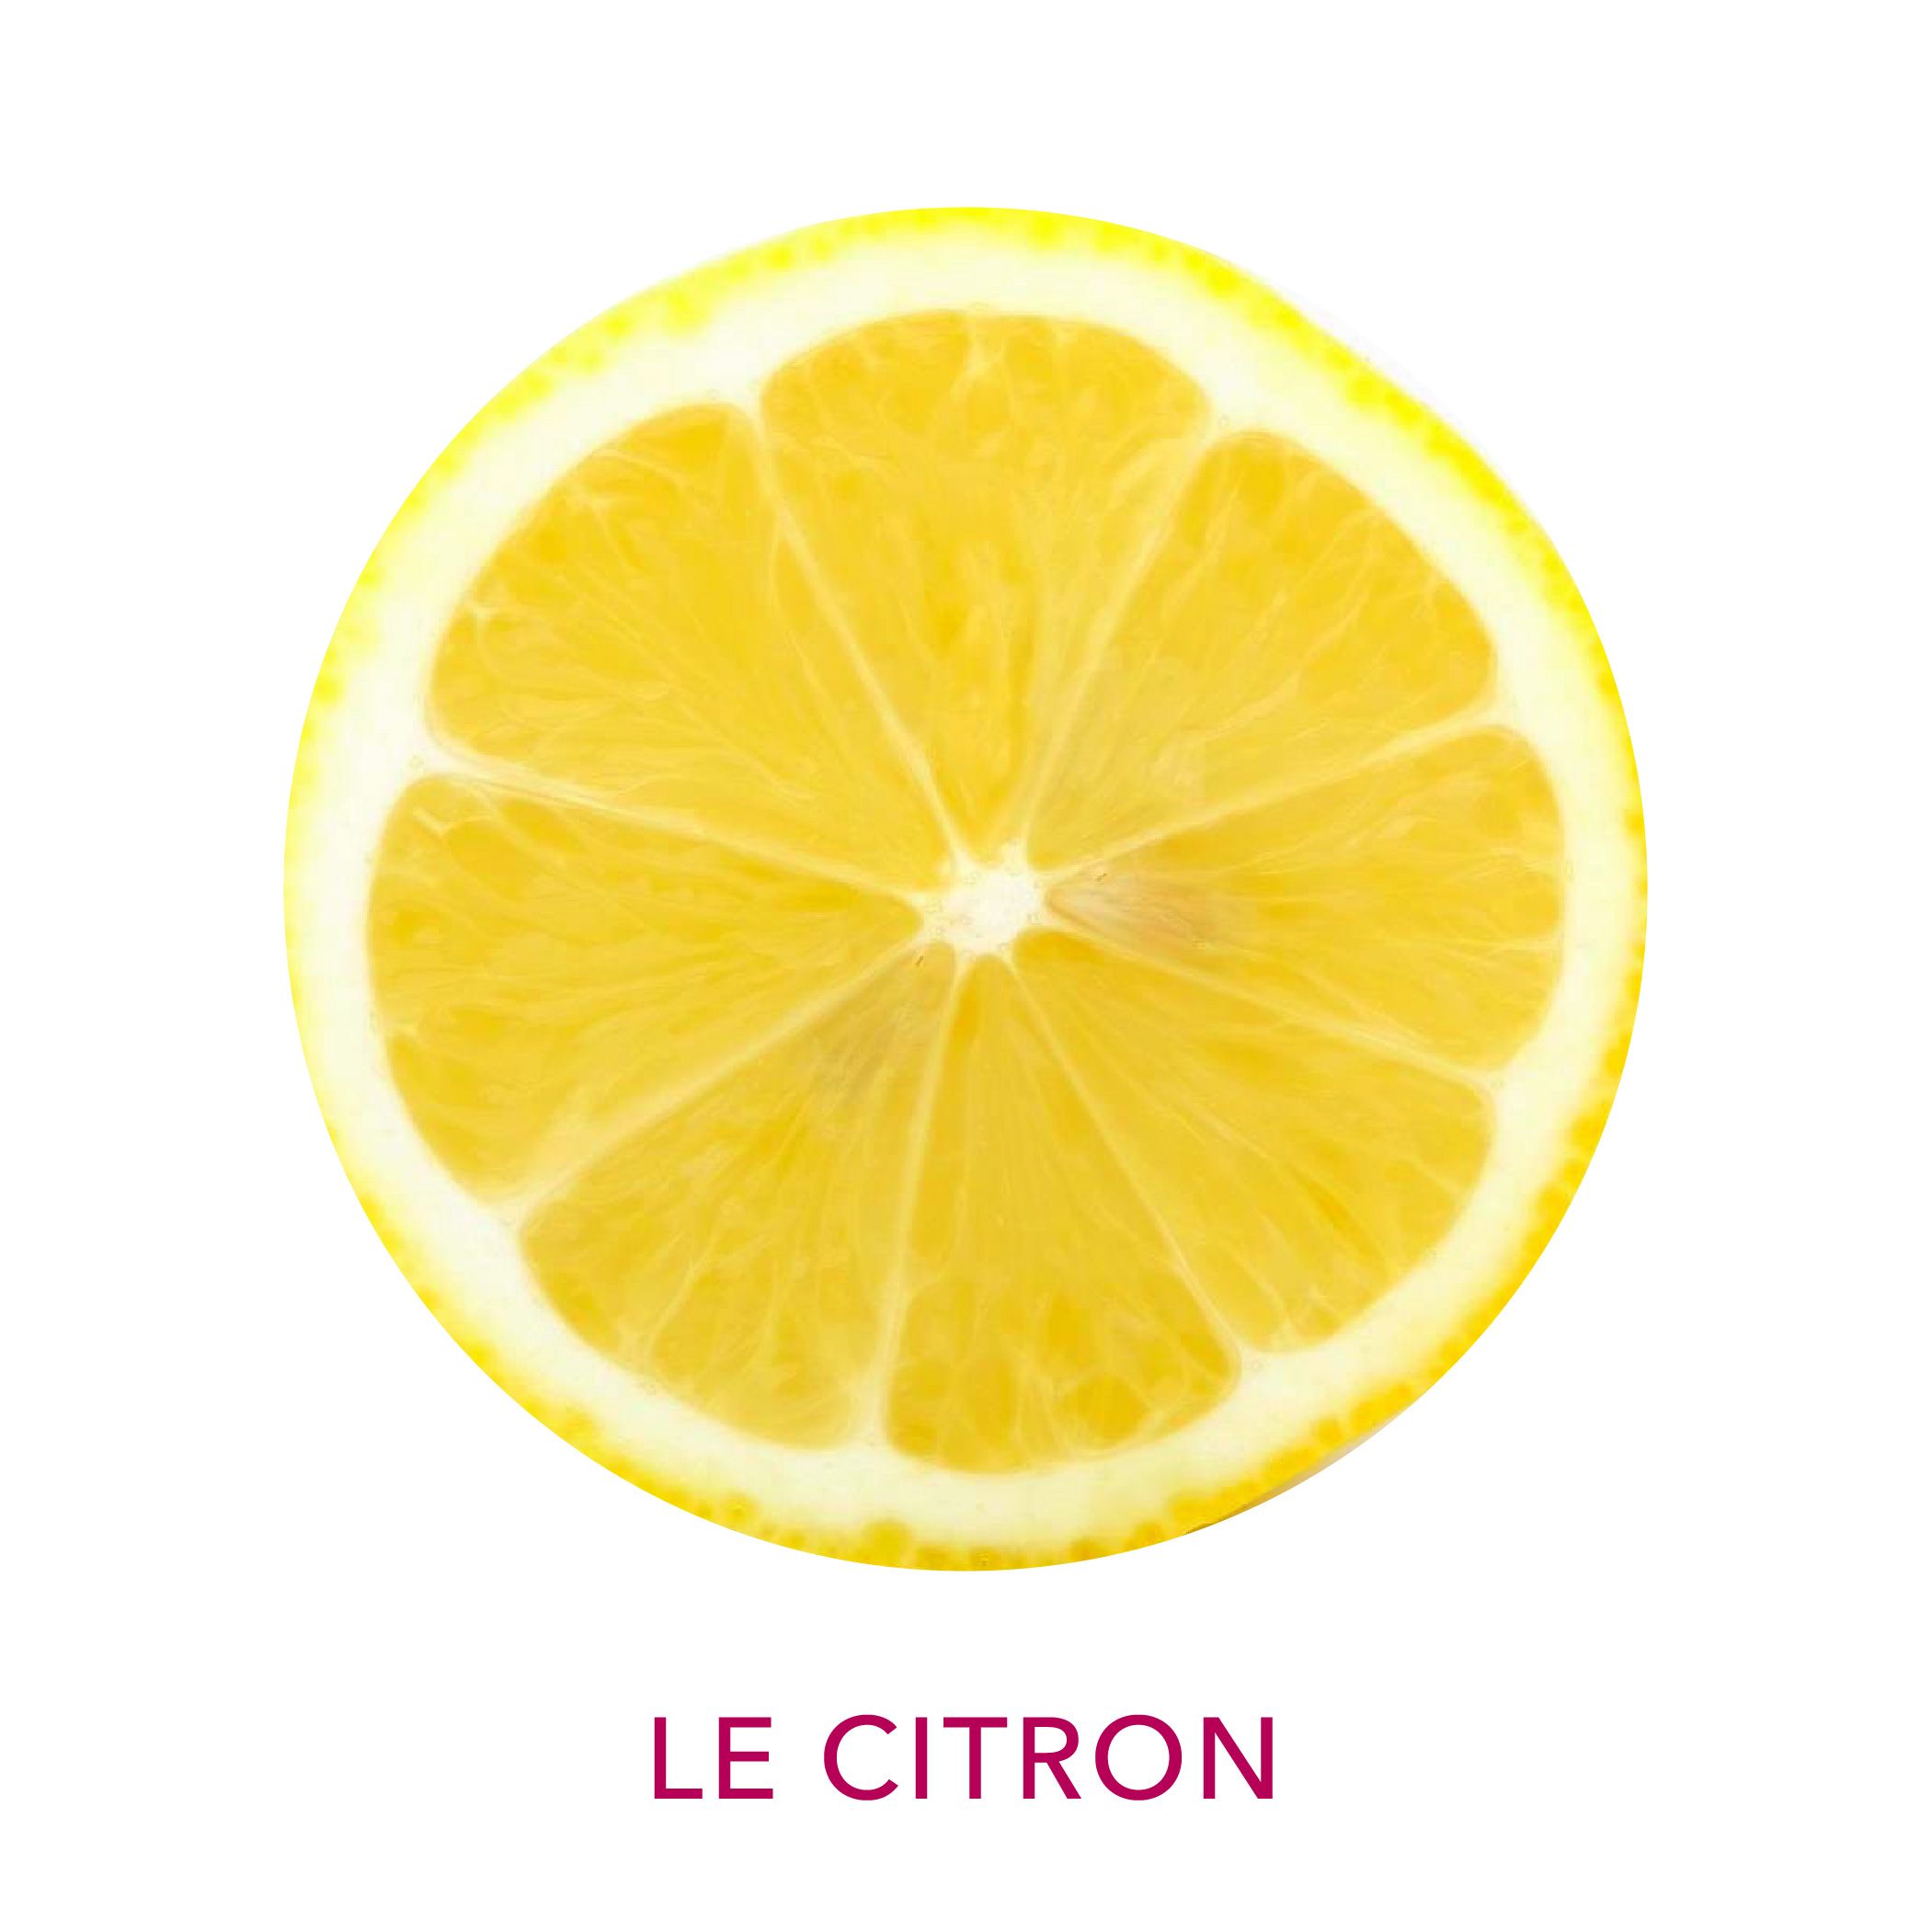 Actif cosmétique Clairjoie le citron